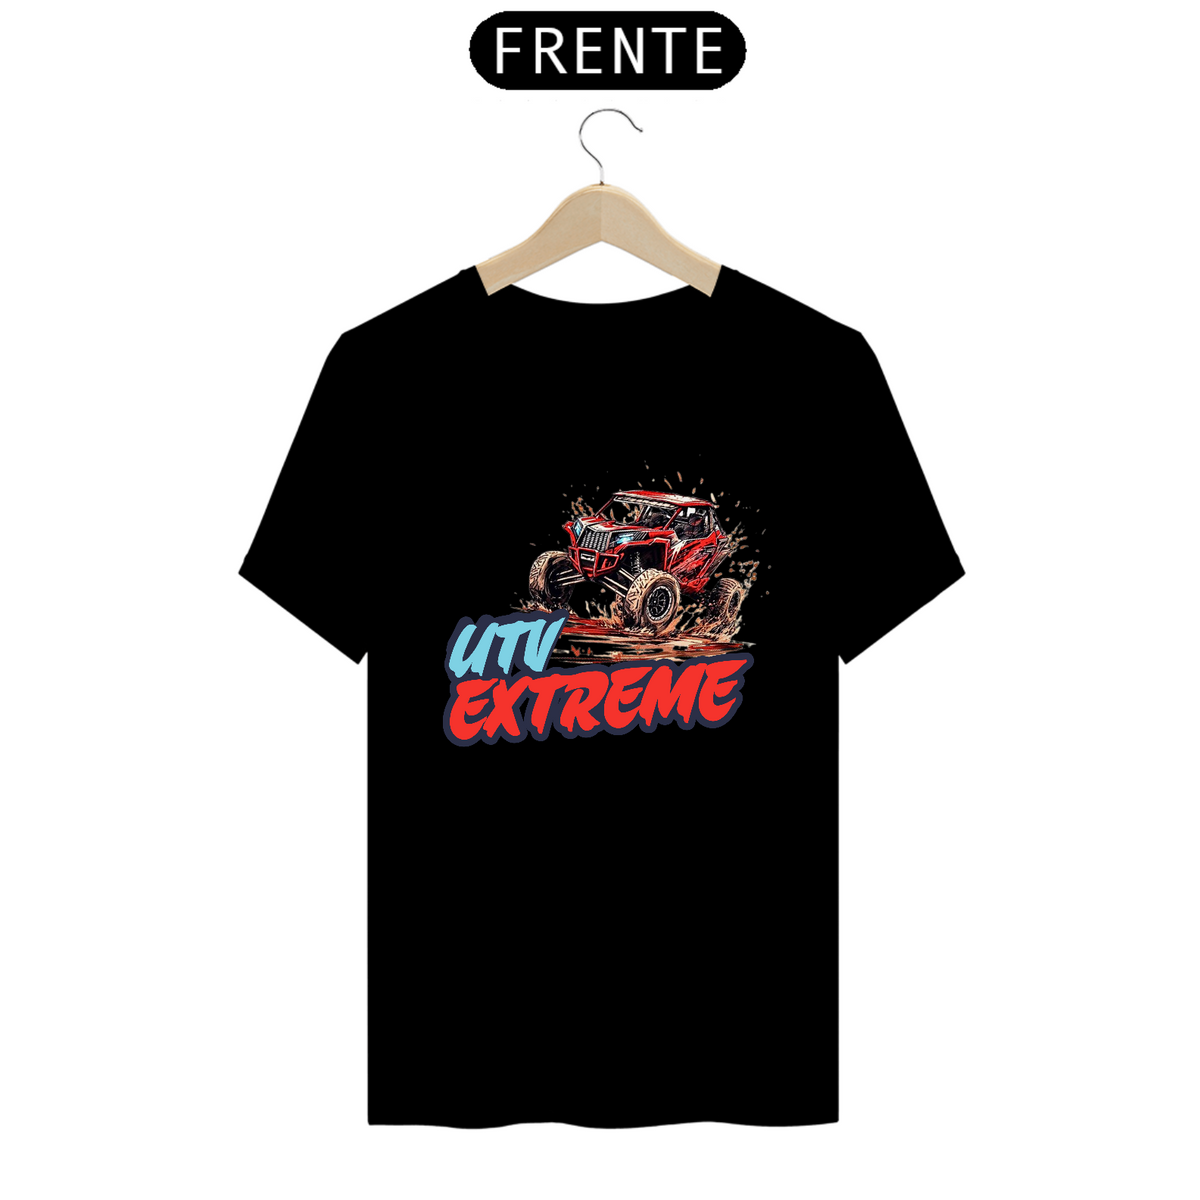 Nome do produto: T-Shirt Prime - UTV EXTREME